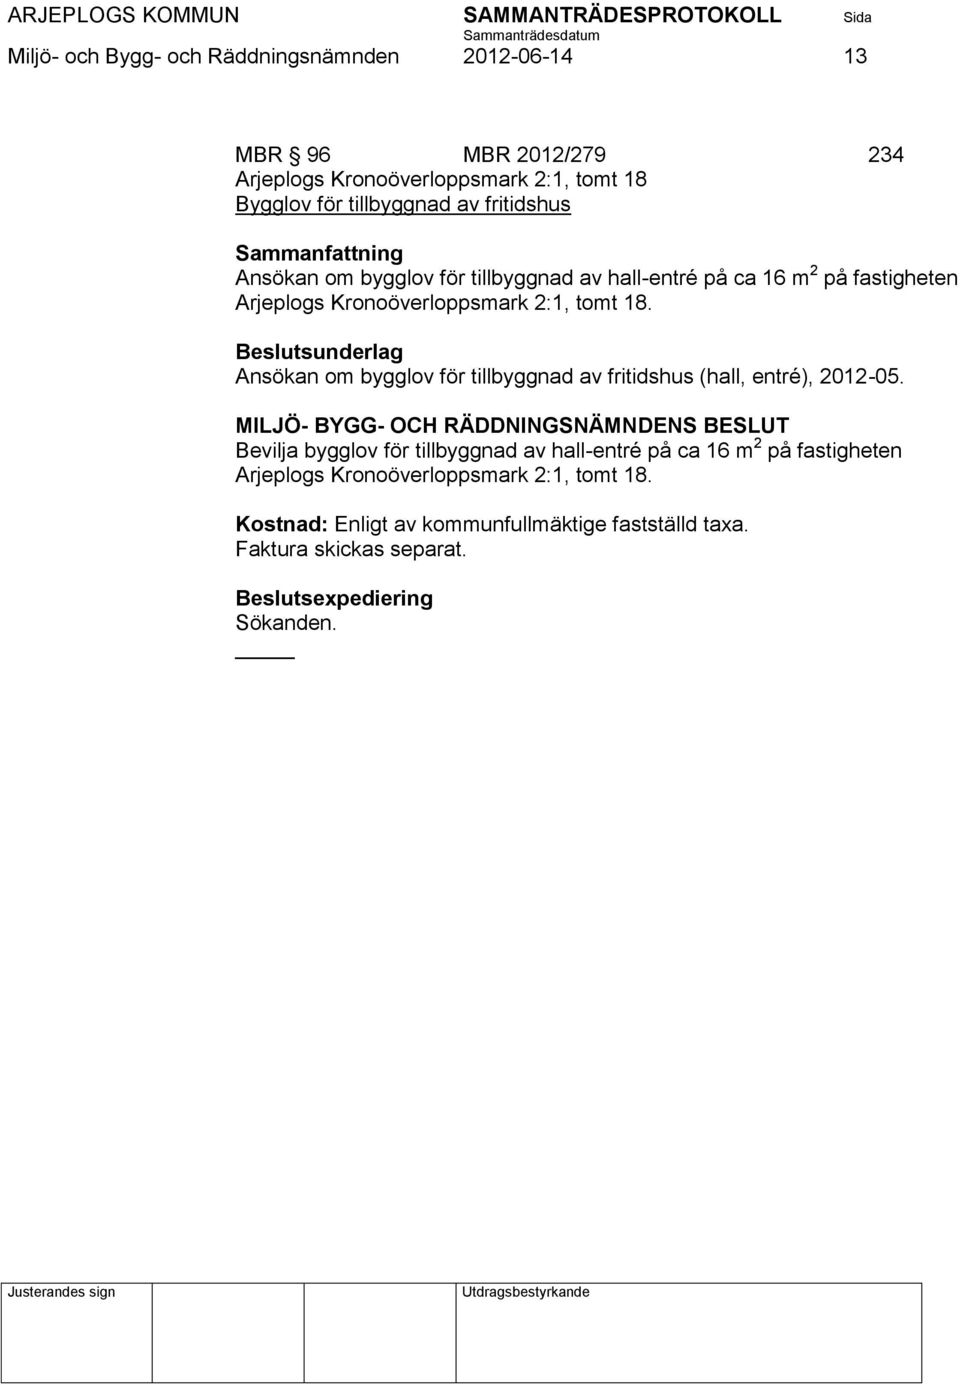 tomt 18. Ansökan om bygglov för tillbyggnad av fritidshus (hall, entré), 2012-05.